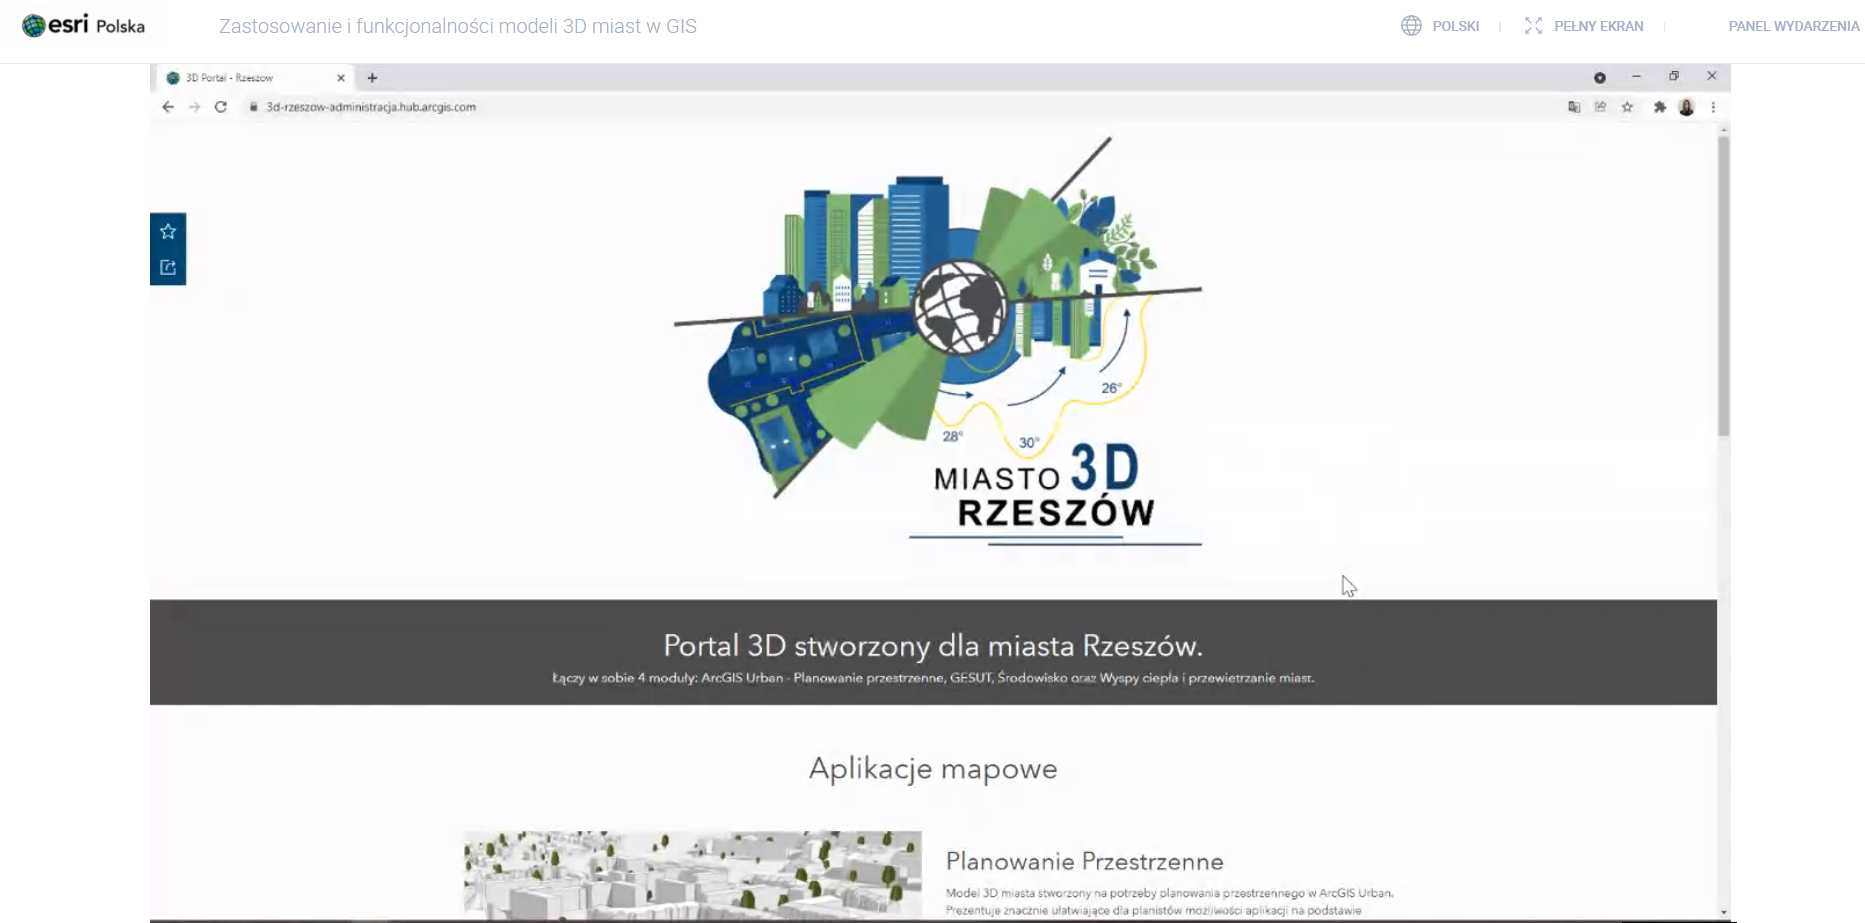 Zastosowanie i funkcjonalności modeli 3D miast w GIS